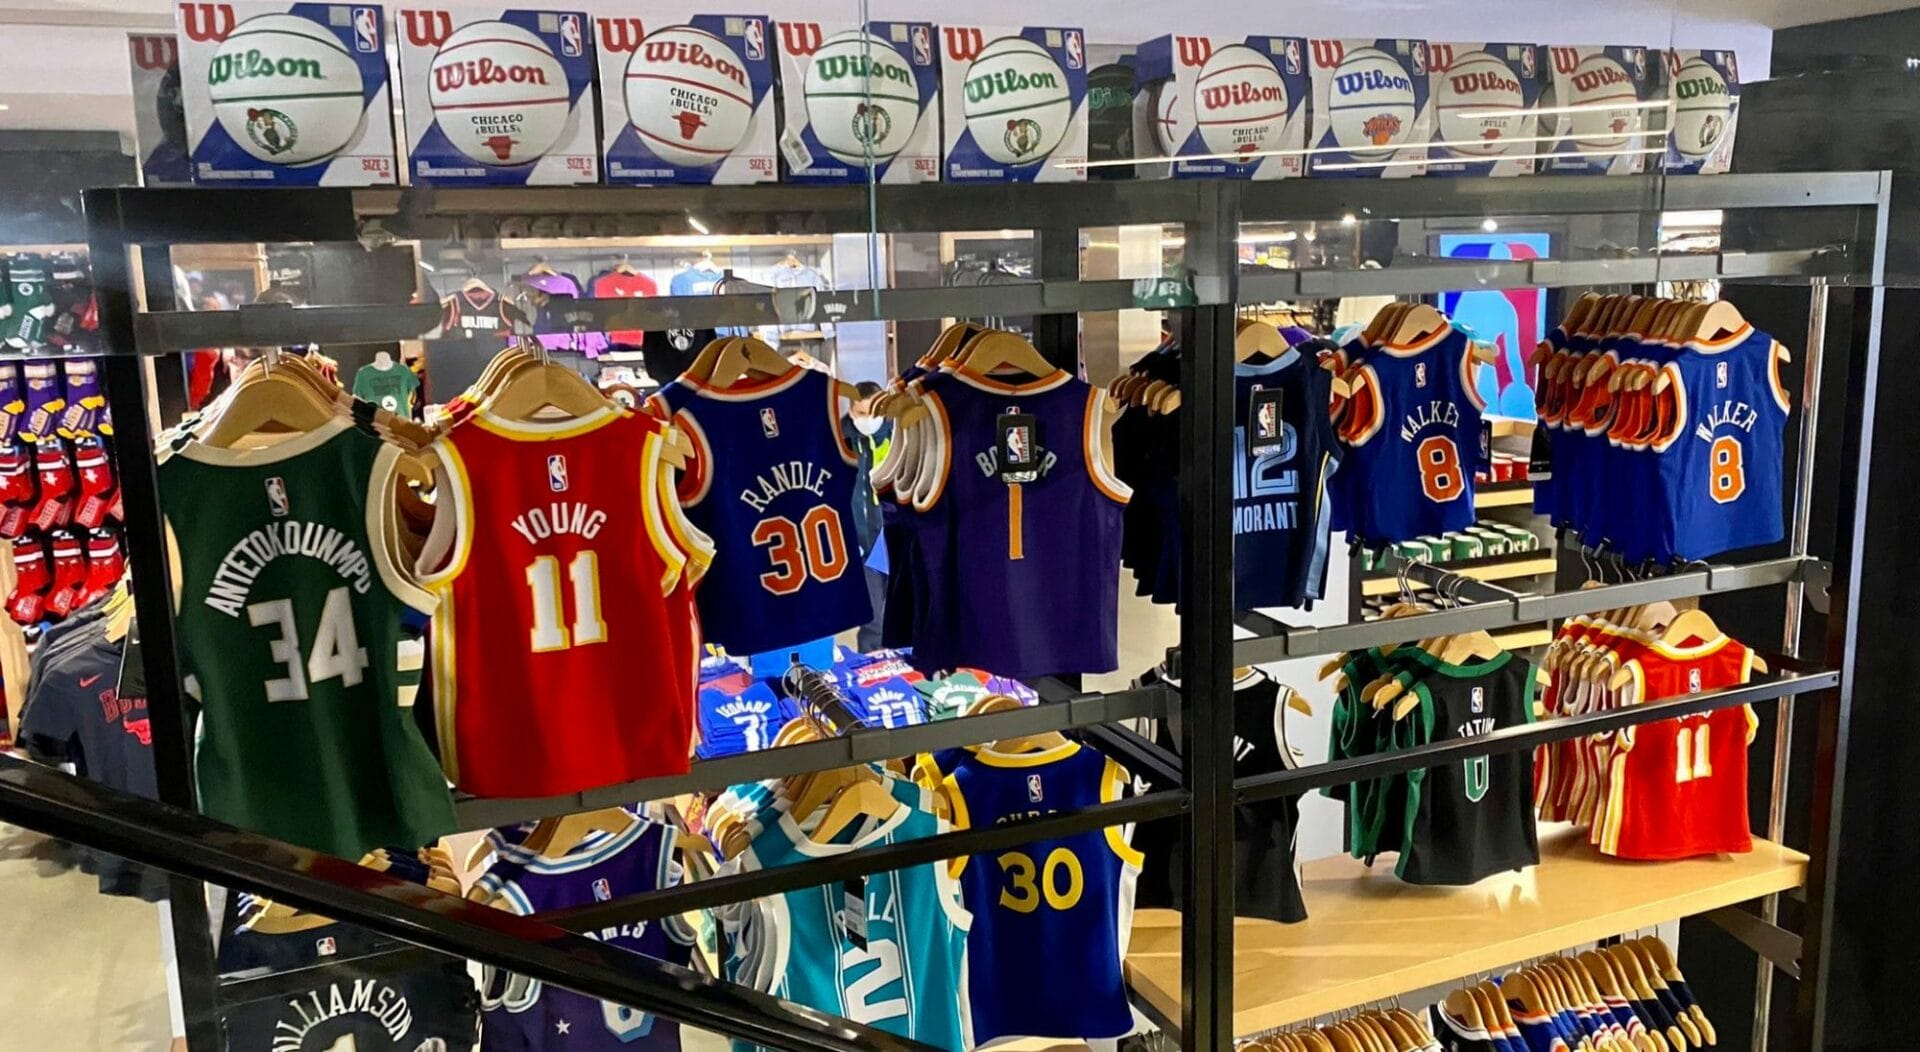 Le NBA Store à New York, przejście jest obowiązkowe dla fanów koszyka: 20% deduction z Trip Double! - Wycieczka podwójna